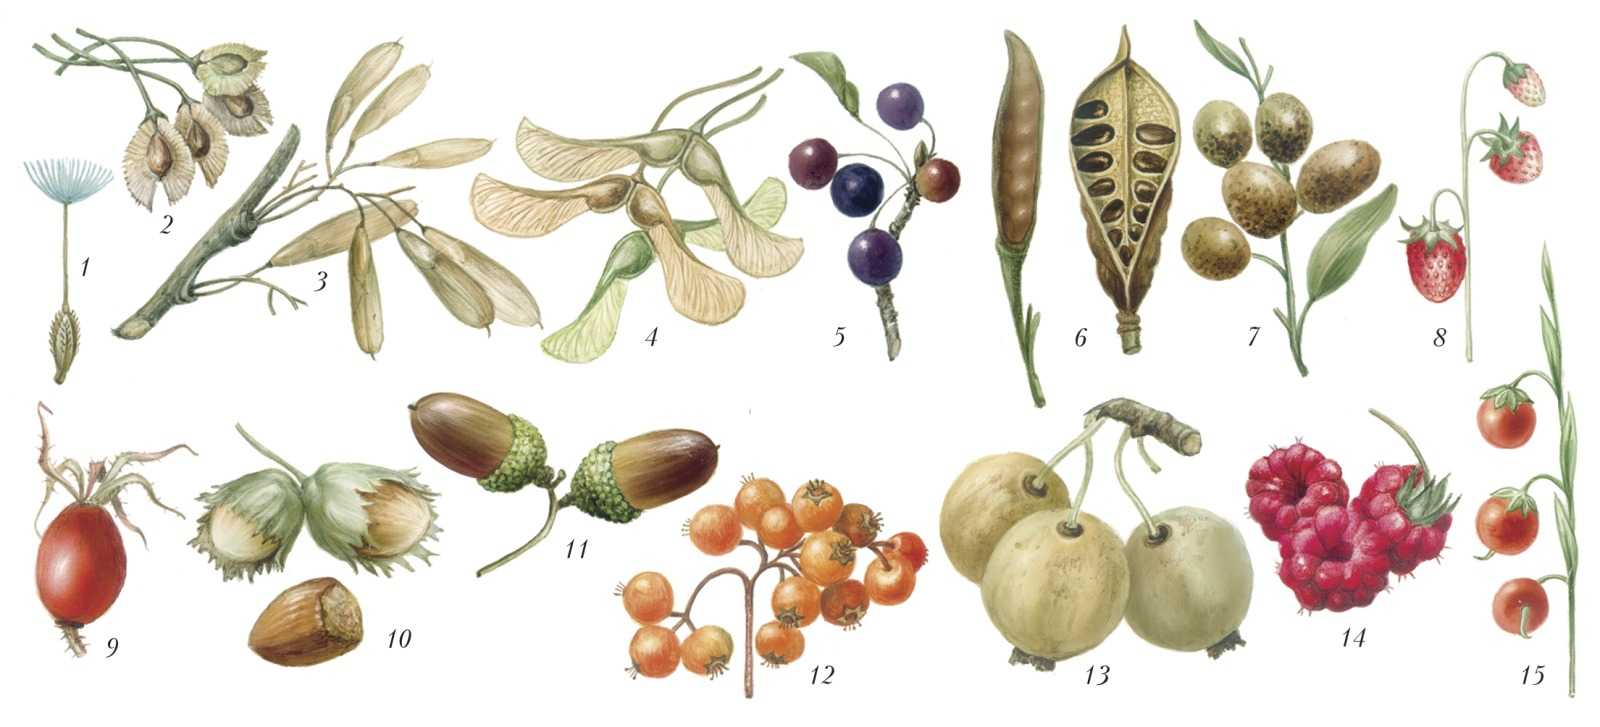 Семейство бобовых растений - признаки и виды, примеры, характеристика и строение